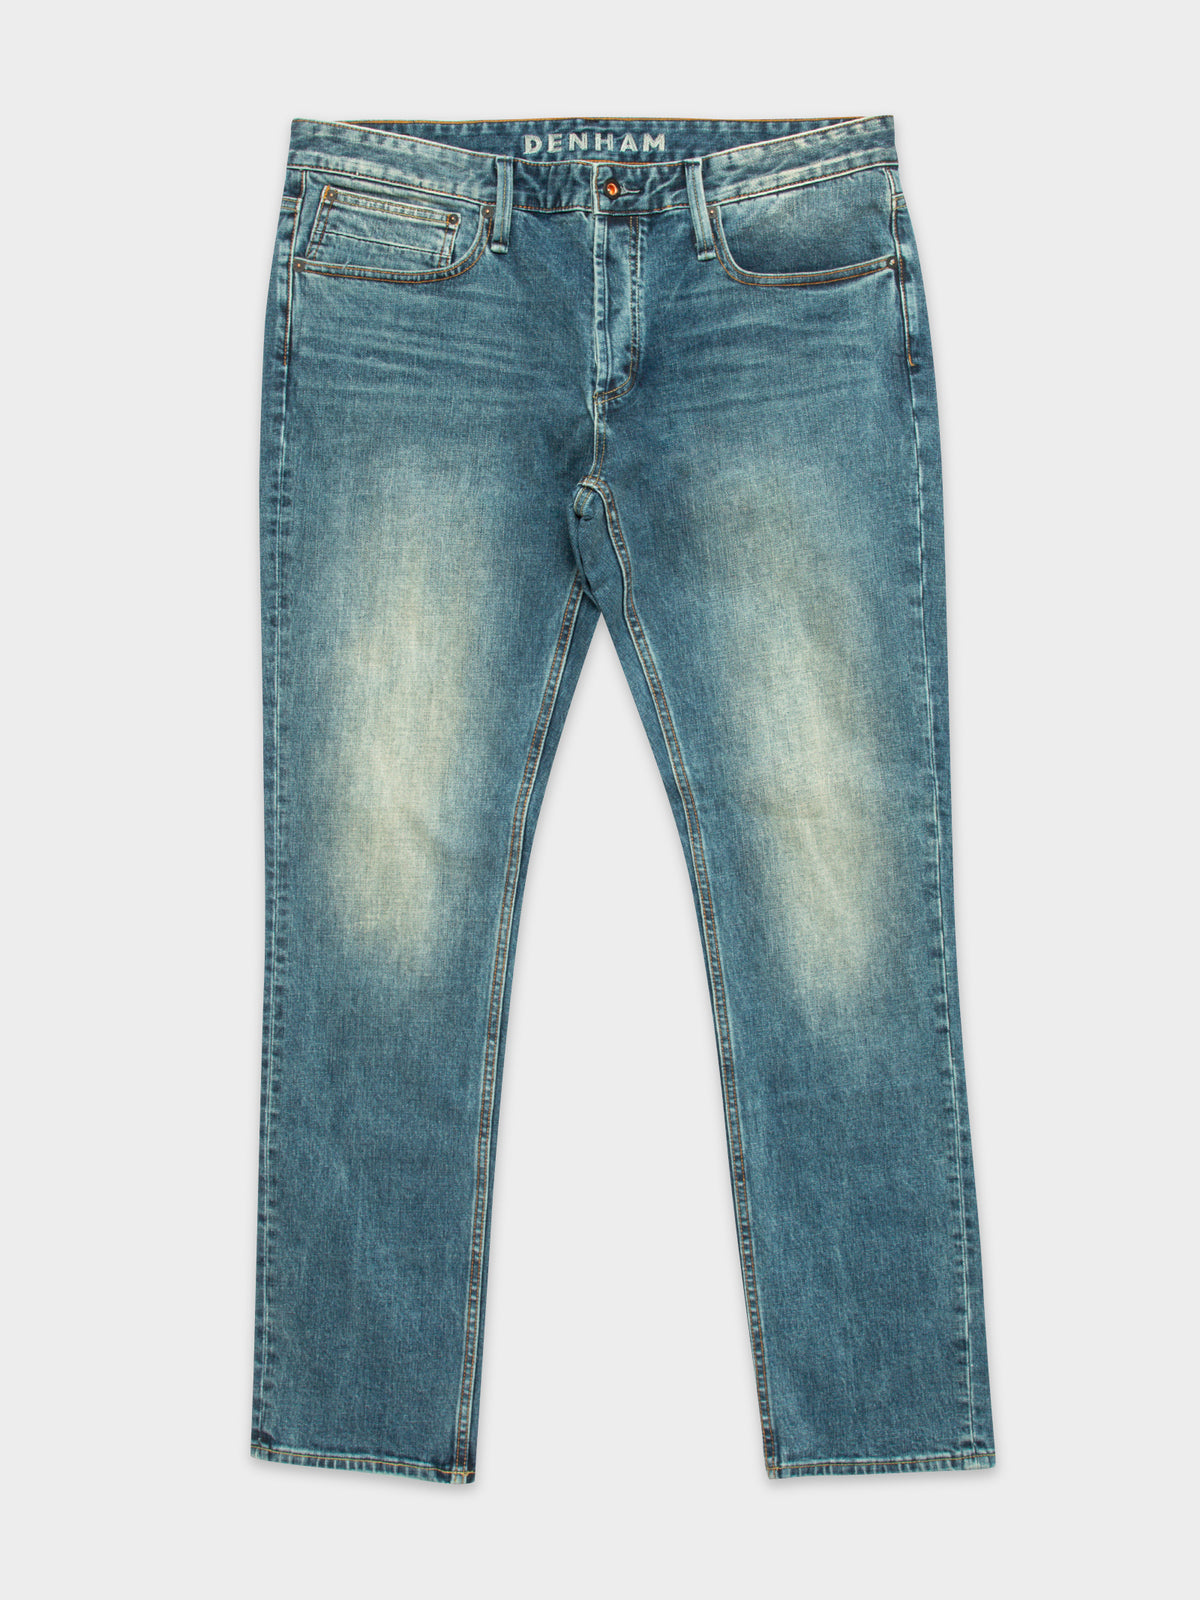 Razor Acsubl Jeans in Denim